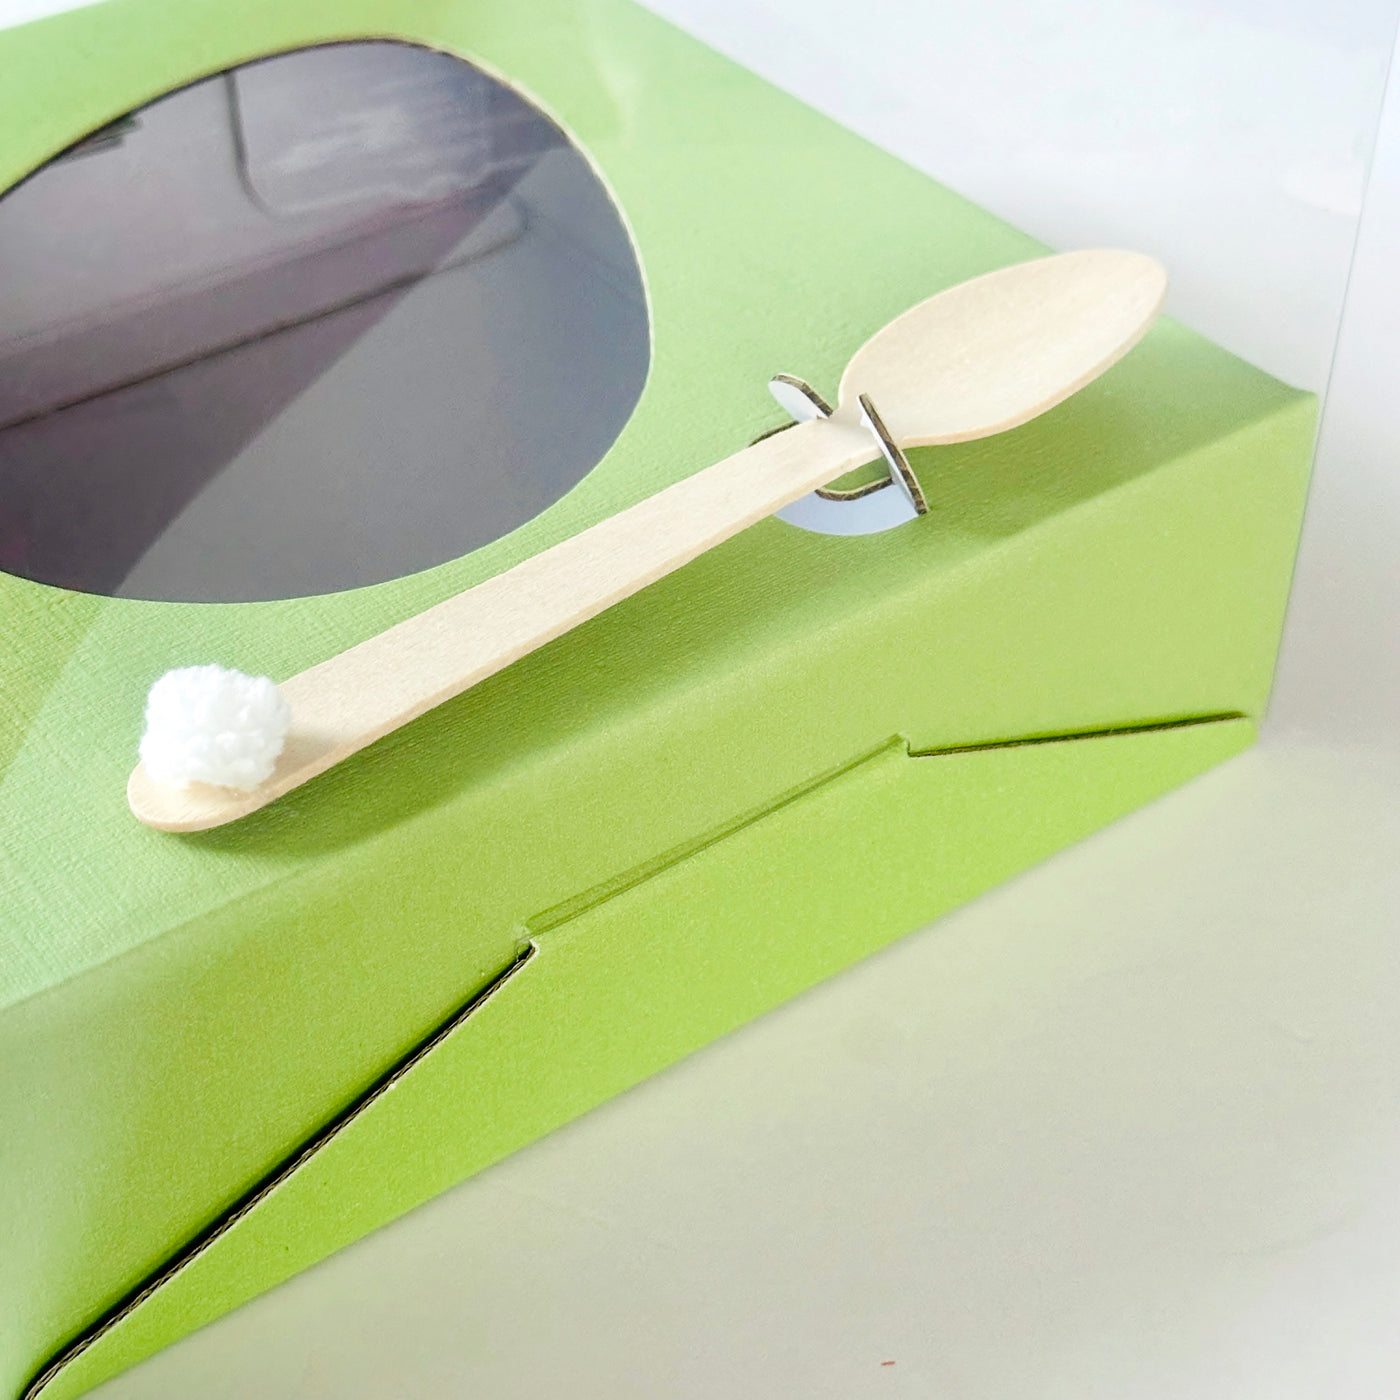 Κουτάκι για μισό σοκολατένιο αυγό με διάφανο καπάκι και βάση πράσινη 18 x 18 x 15 εκ.